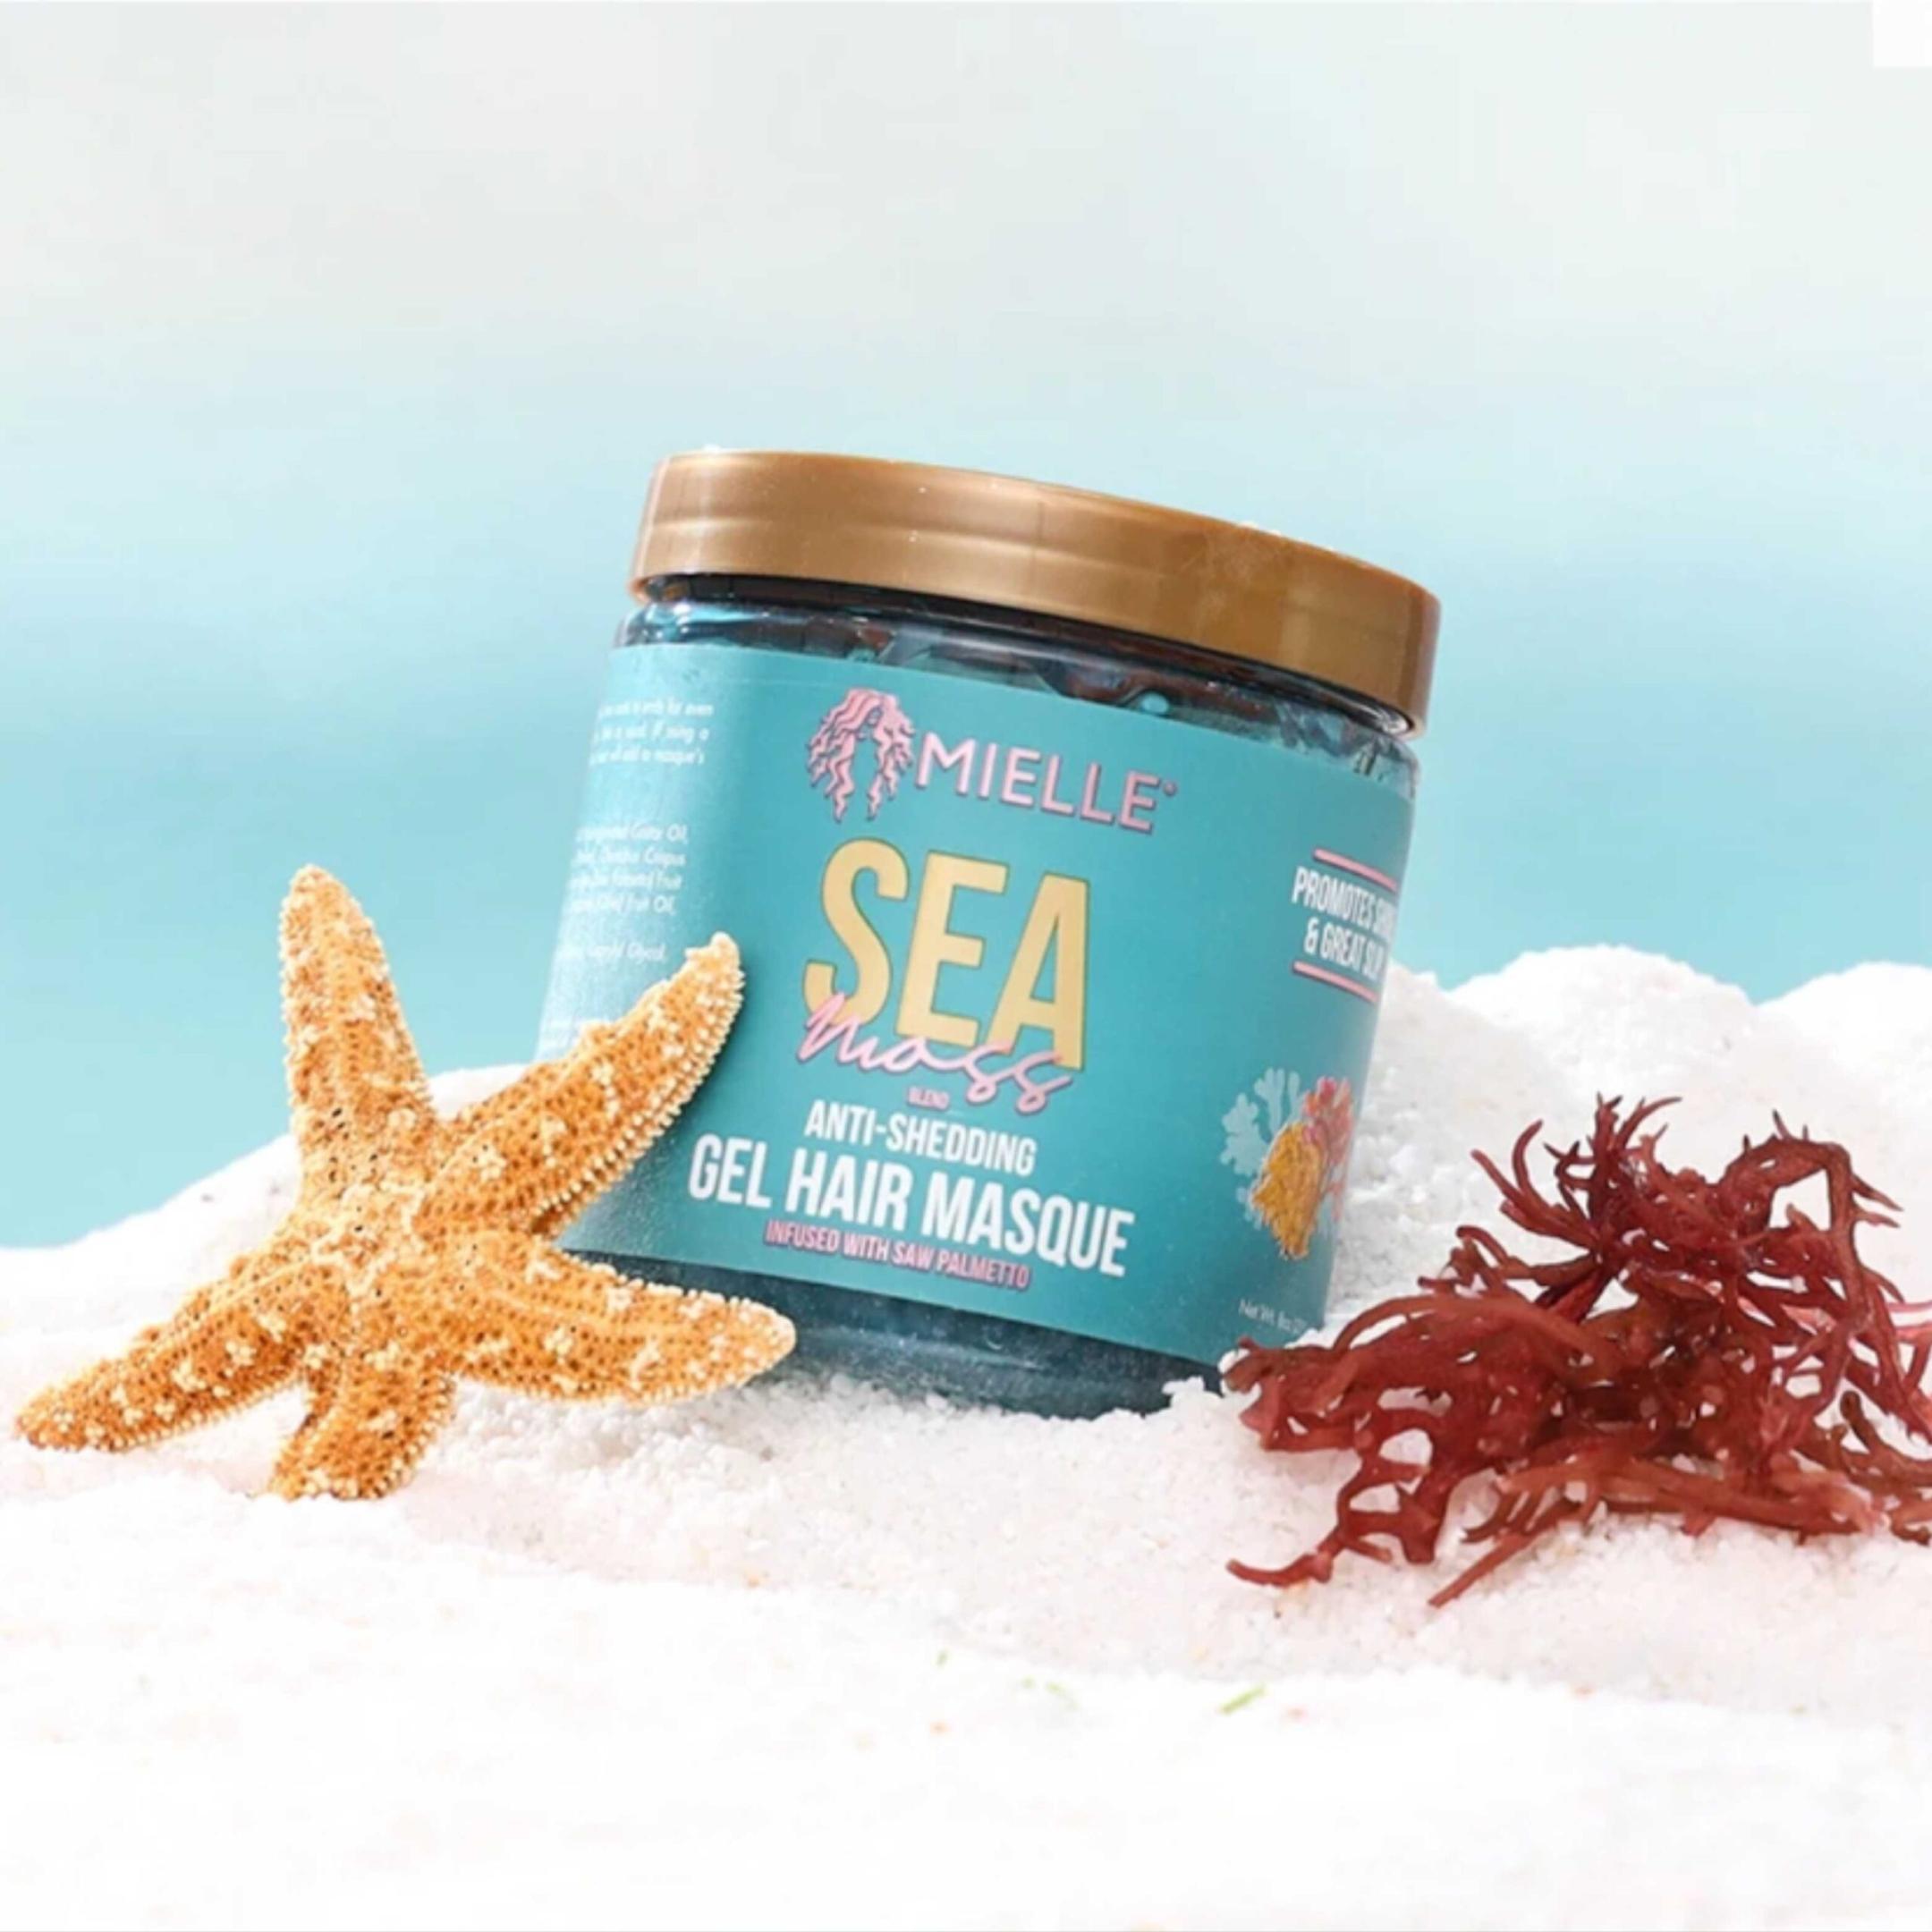 Mielle Sea Moss anti-shed Gel Hair Masque (2)